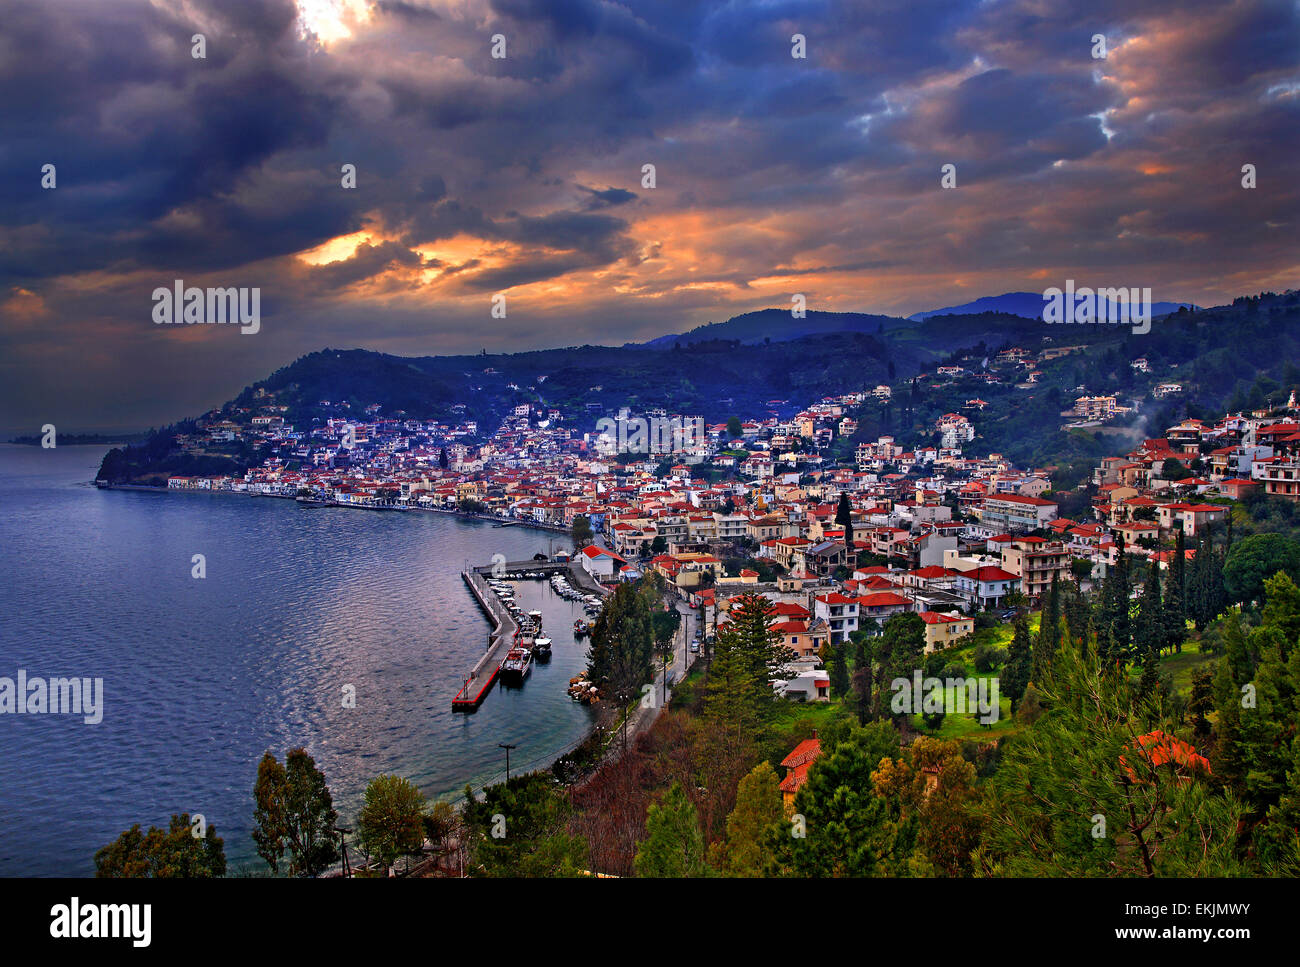 Limni, une des plus belles villes d'Evia (Eubée) Island (Grèce) autour de coucher du soleil. Banque D'Images